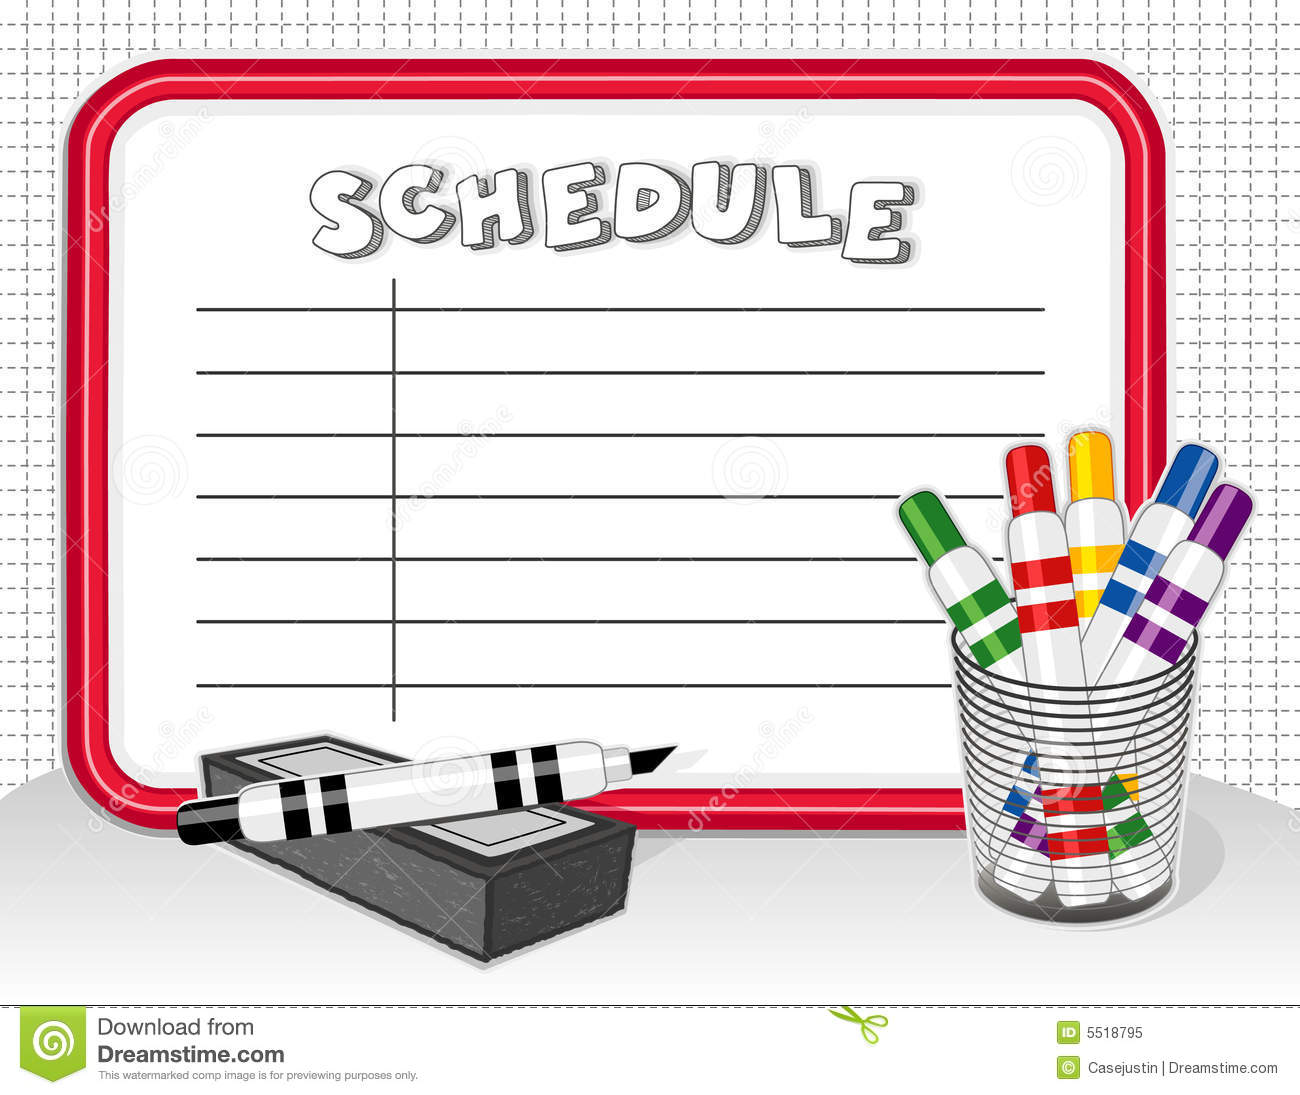 daily schedule clipart en espaÃ±ol